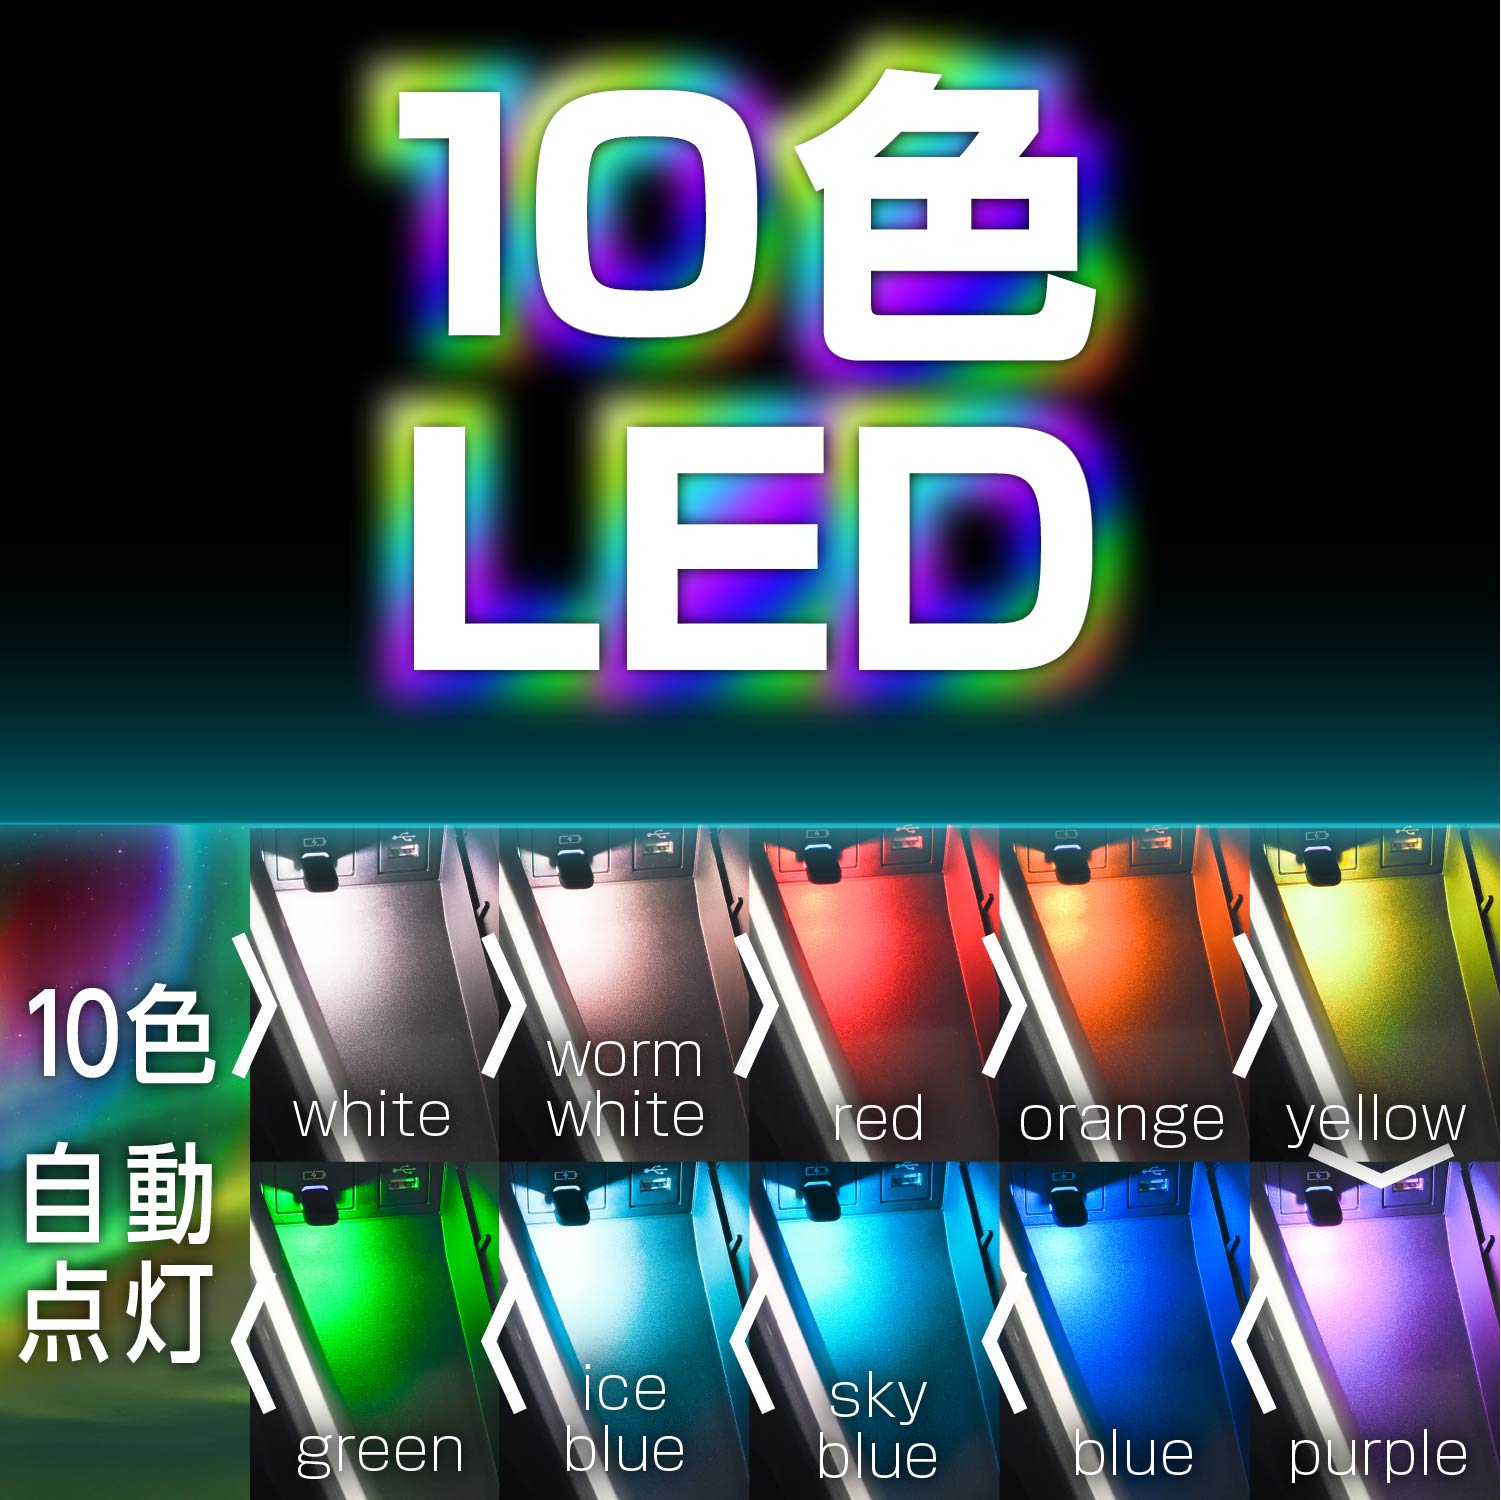 セイワ(SEIWA) 車内用品 LED イルミネーション USB-C ミニタッチライト F347 USB Type-C 10色切替機能 調光機能付き 7種の照射パターン RGB高輝度LED採用 タッチセンサースイッチ 3